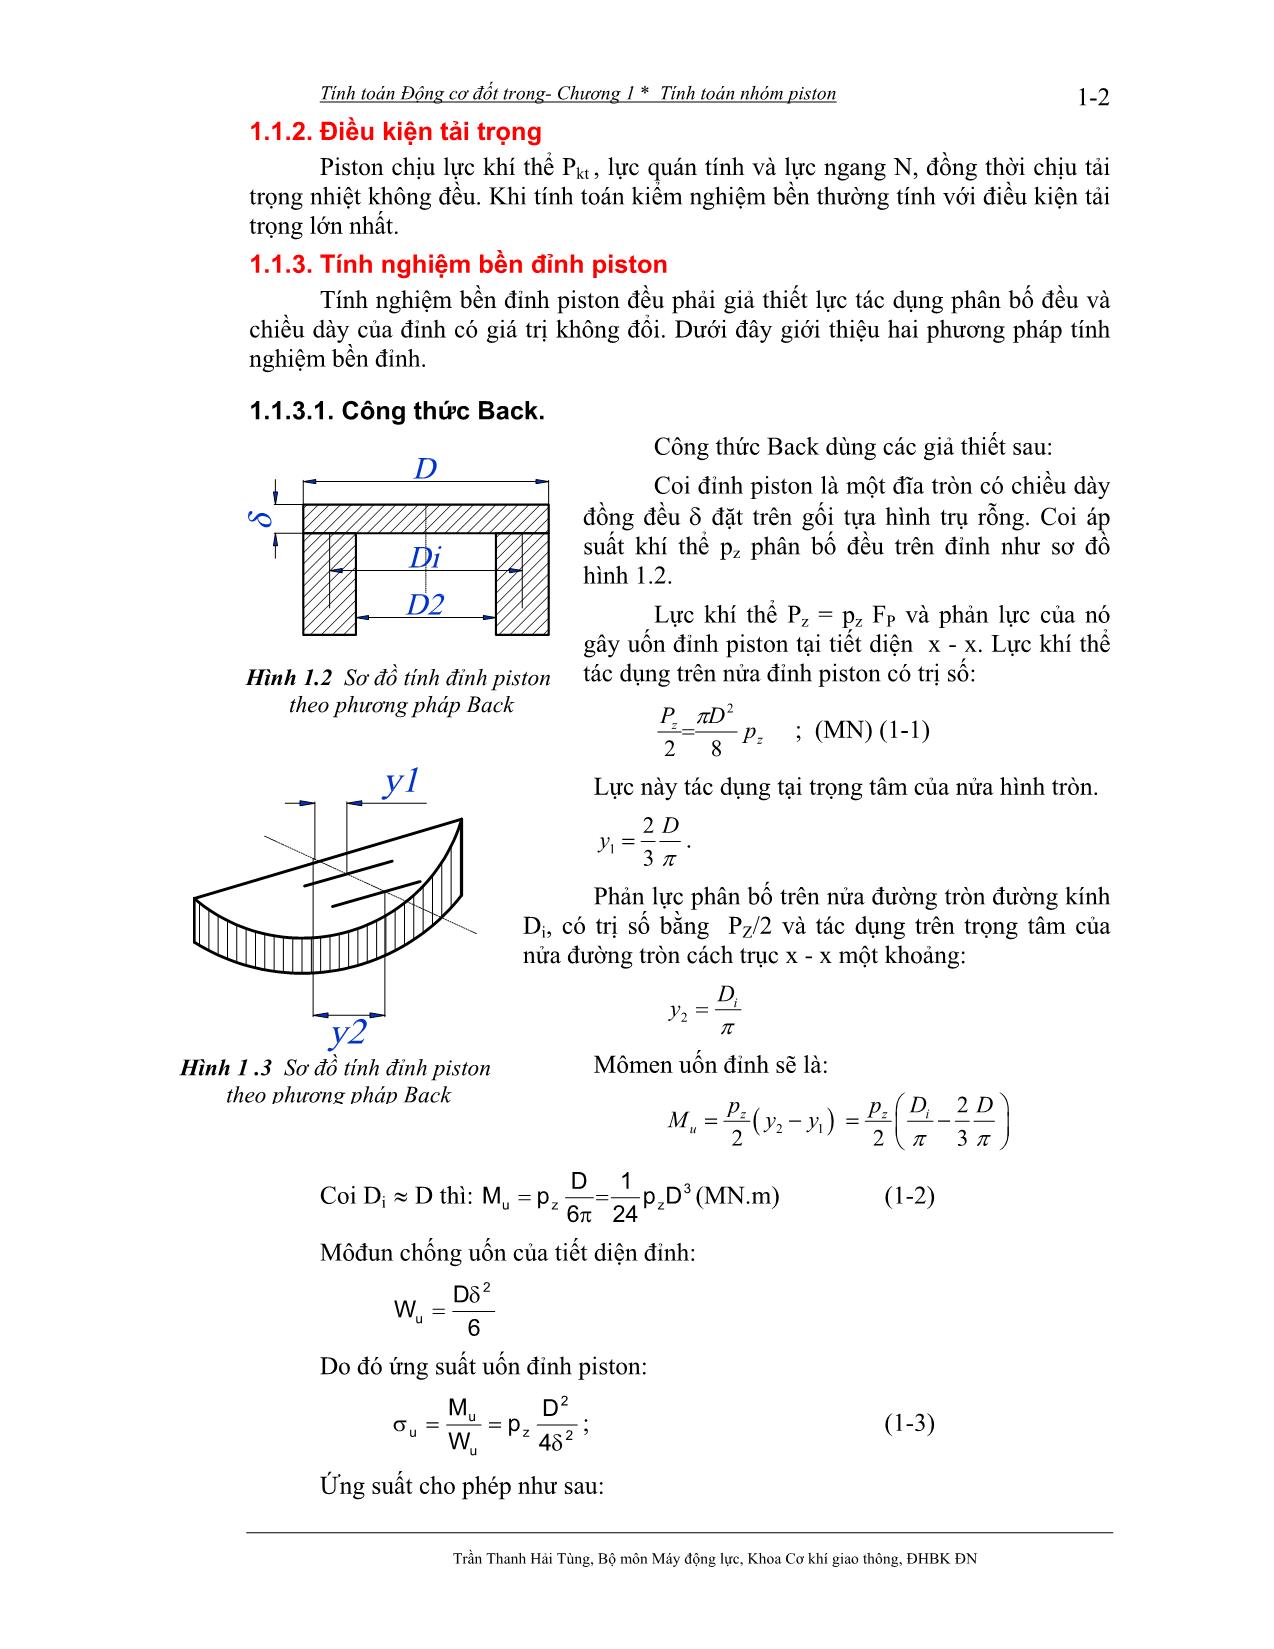 Bài giảng Tính toán thiết kế động cơ đốt trong - Trần Thanh Hải Tùng trang 3